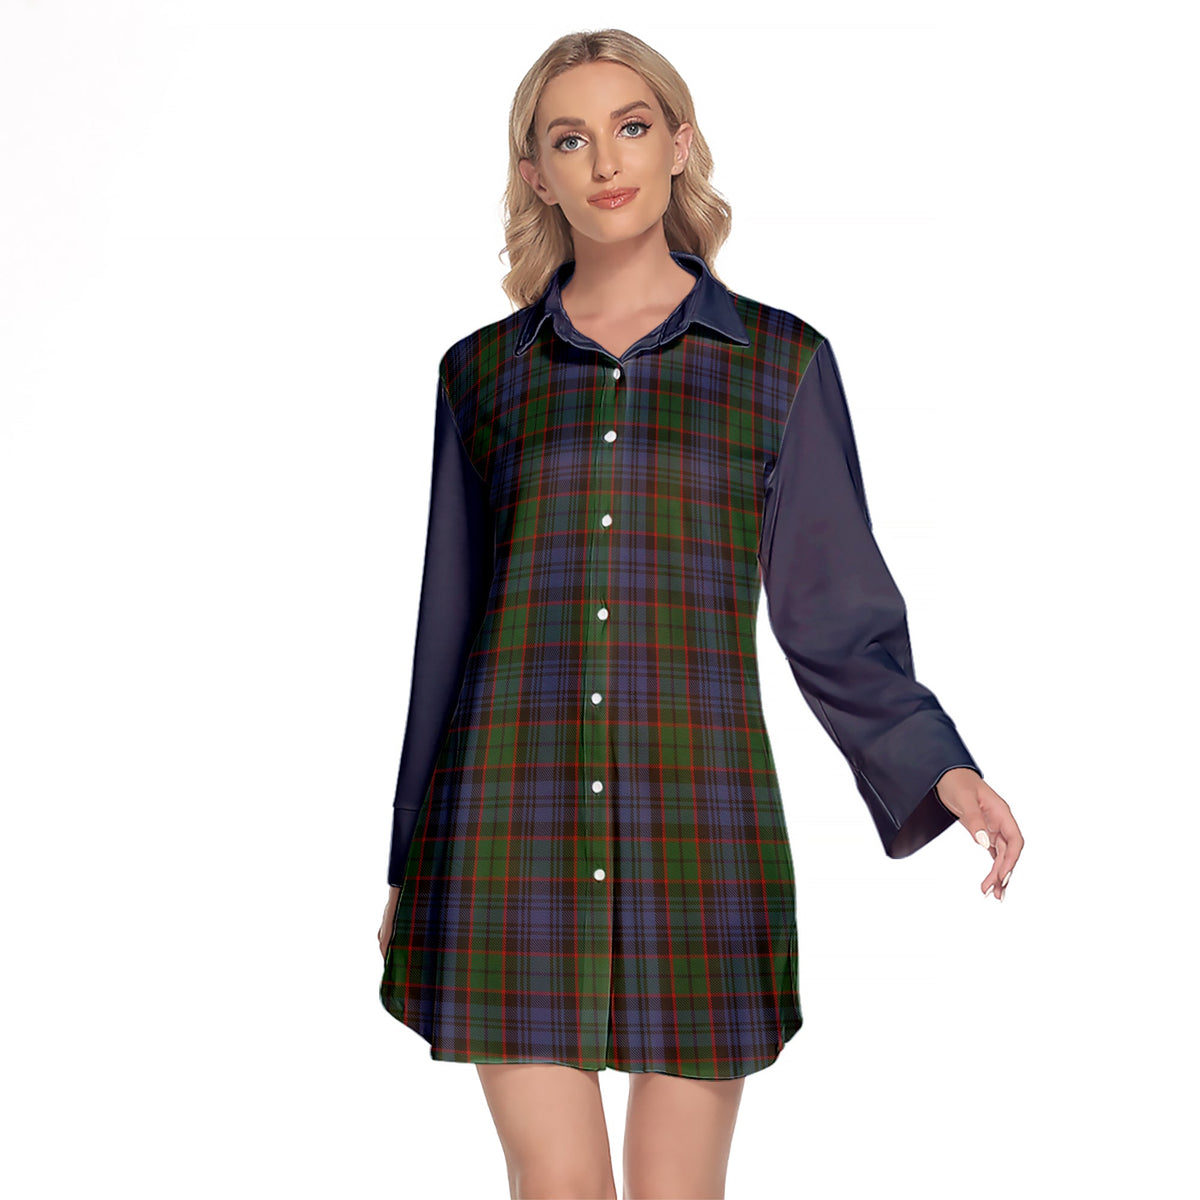 Fletcher Tartan Women's Lapel Shirt Dress With Long Sleeve